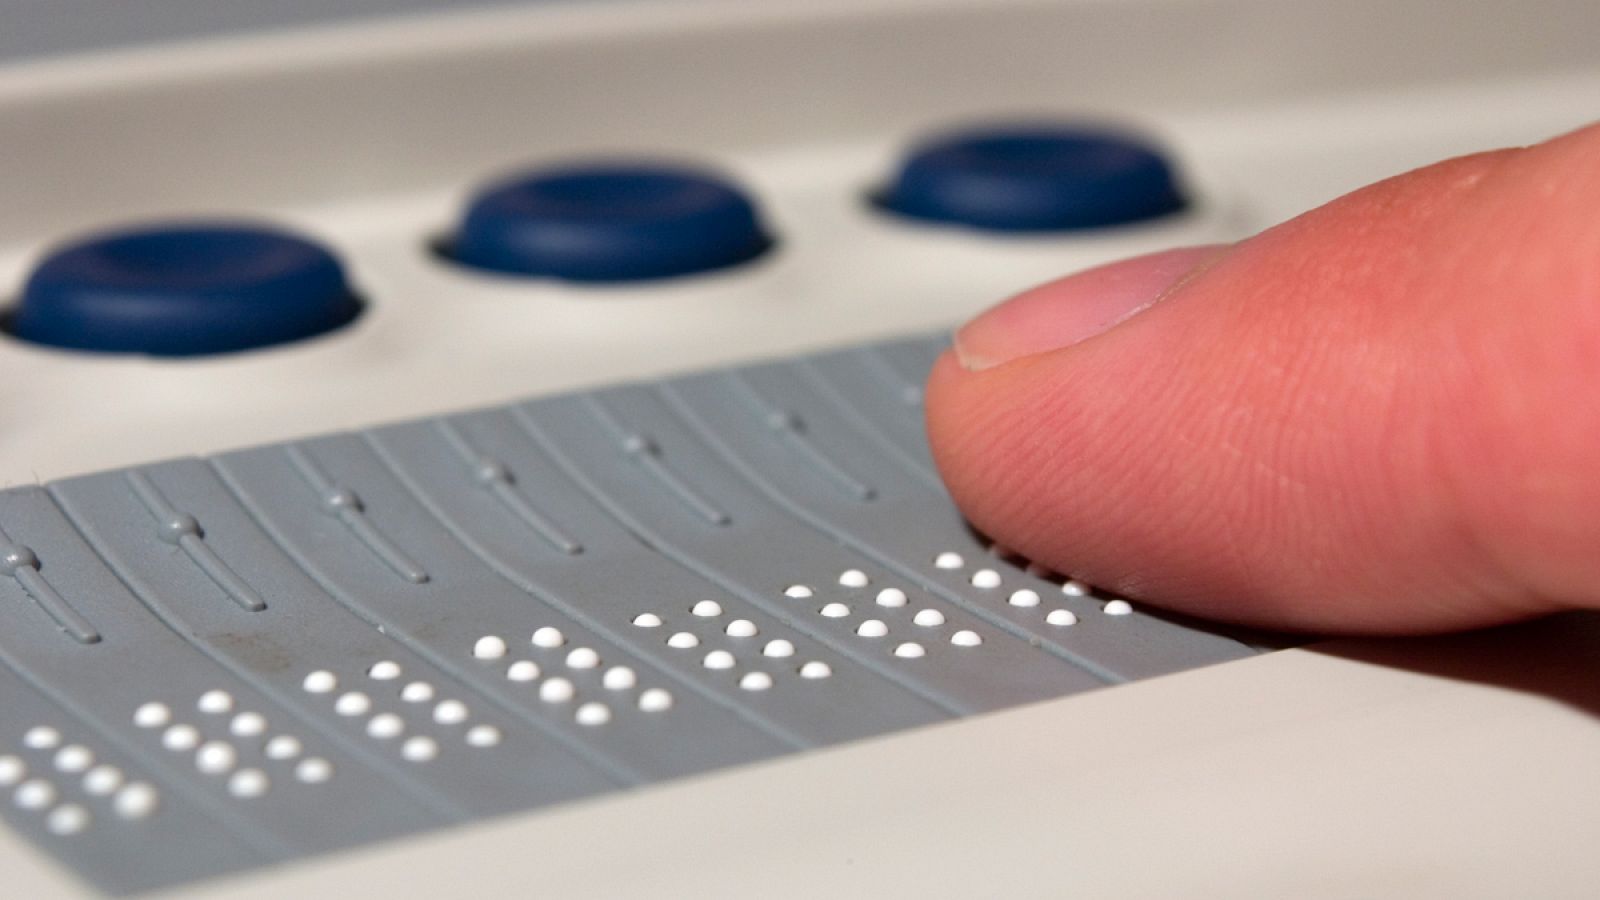 El braille es un sistema de lectura y escritura táctil pensado para personas con discapacidad visual.